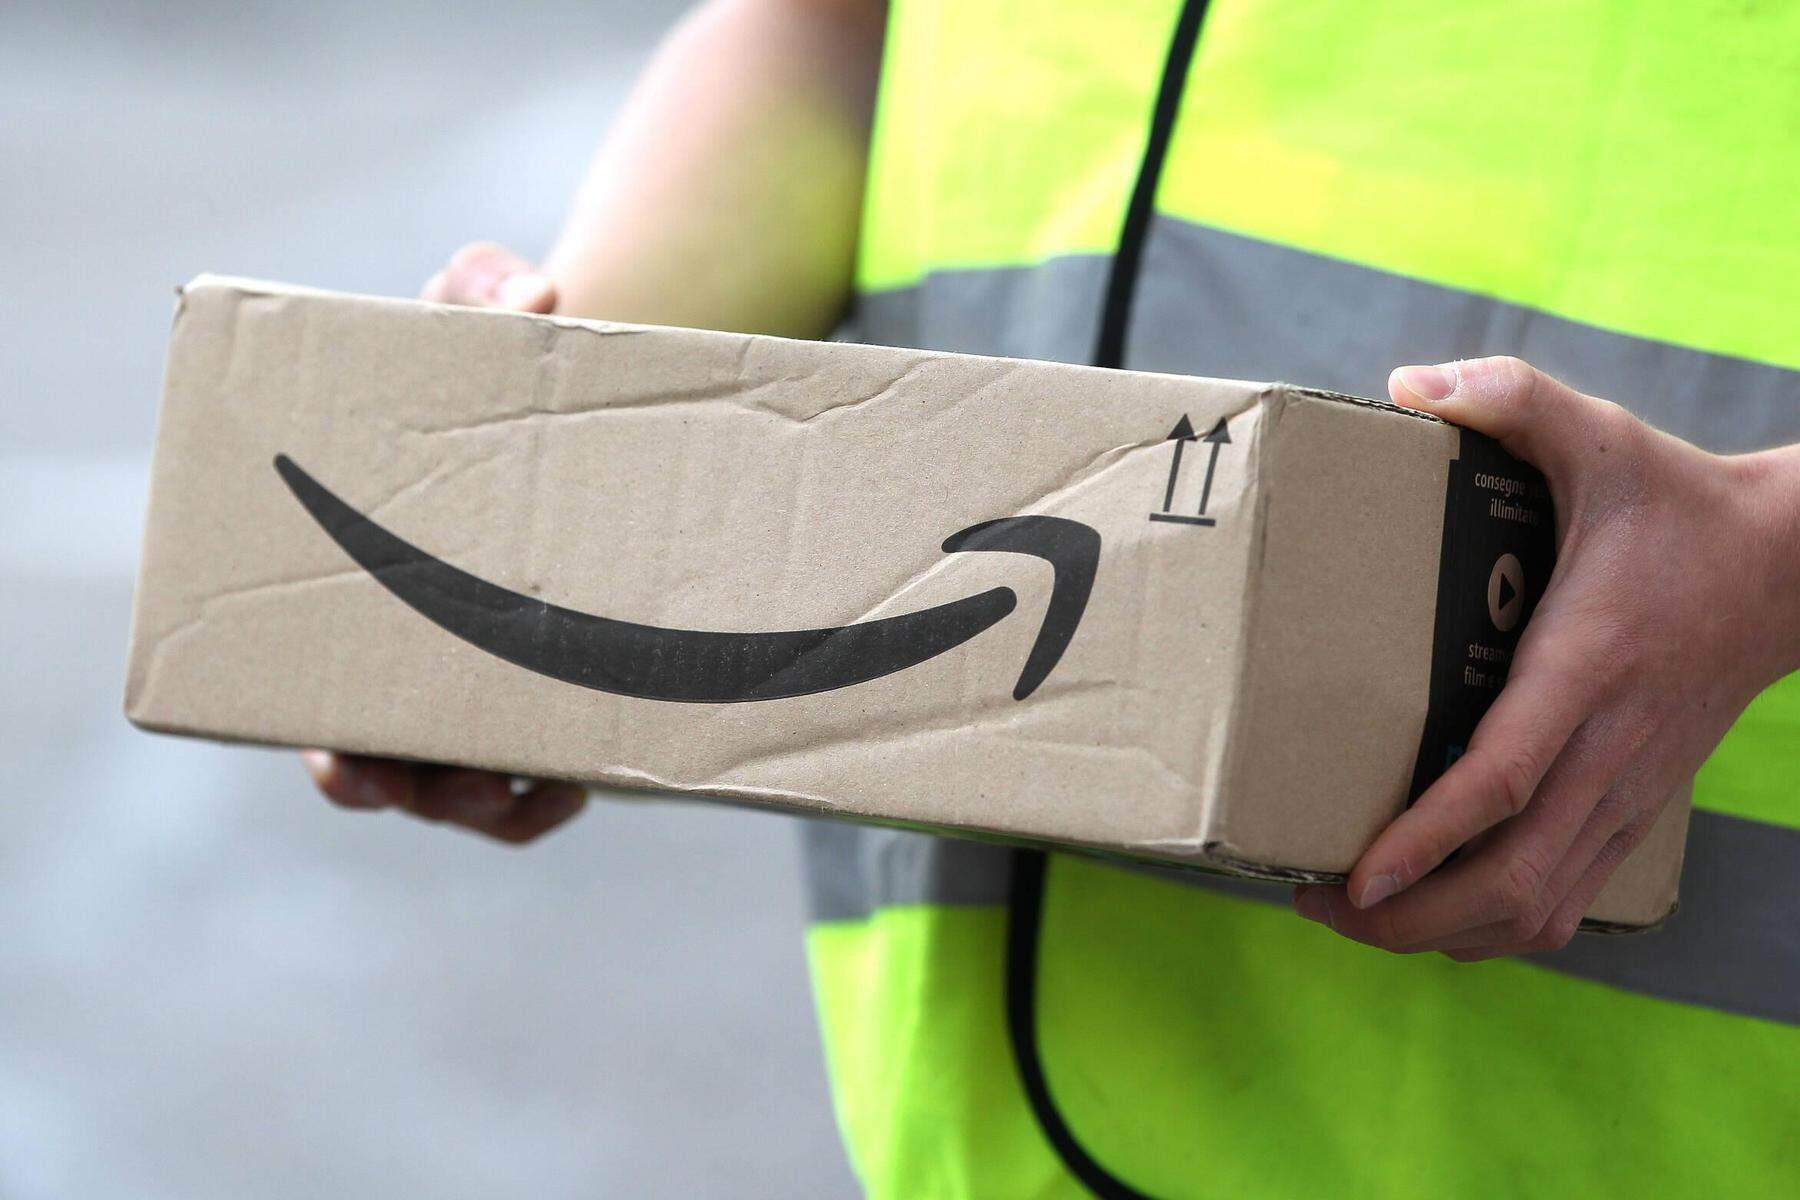 Betrug oder echt? | Amazon-Kunden wegen Nachrichten von Zustellern verunsichert